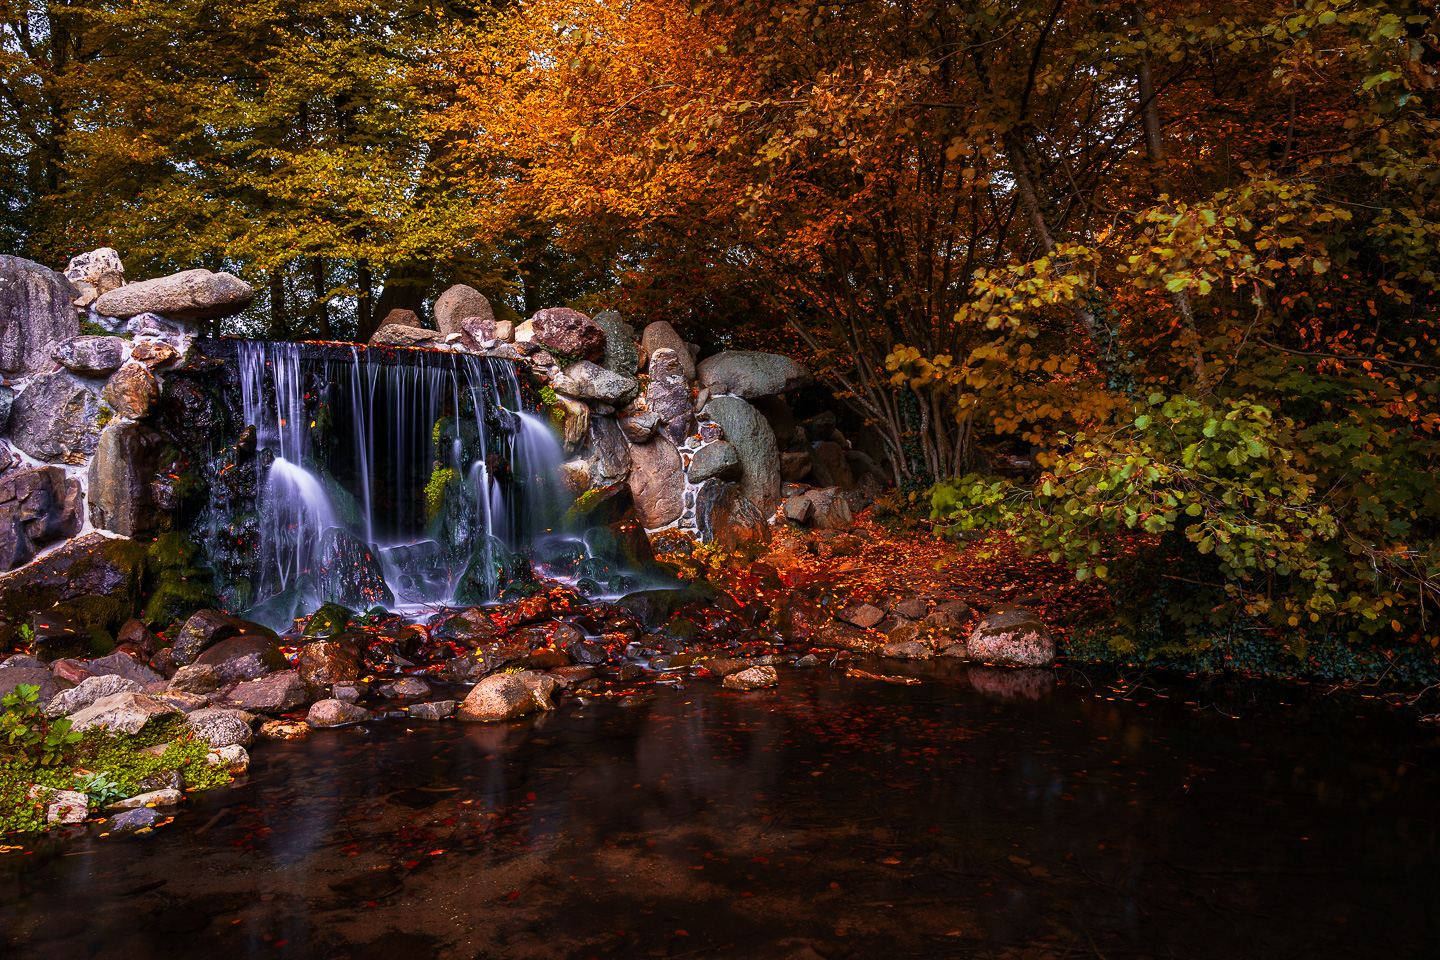 Sonsbeek, Herfst, Oktober, nldazuu fotografeert, autumn, fall, herfst